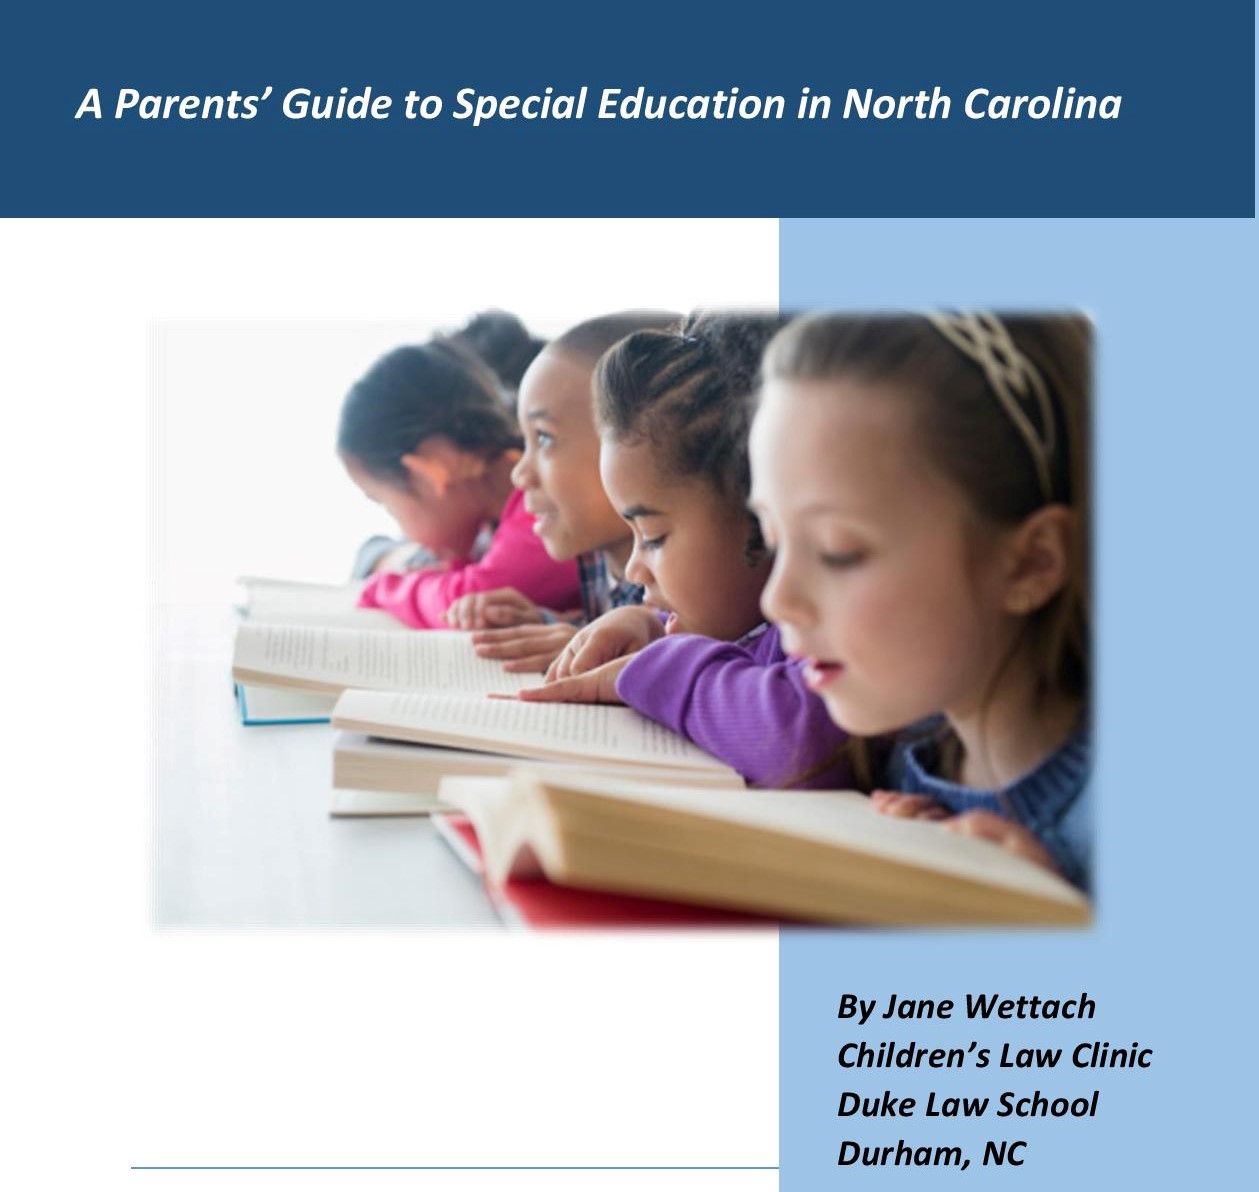 Image d'enfants lisant avec un texte qui dit A Parents' Guide to Special Education in North Carolina